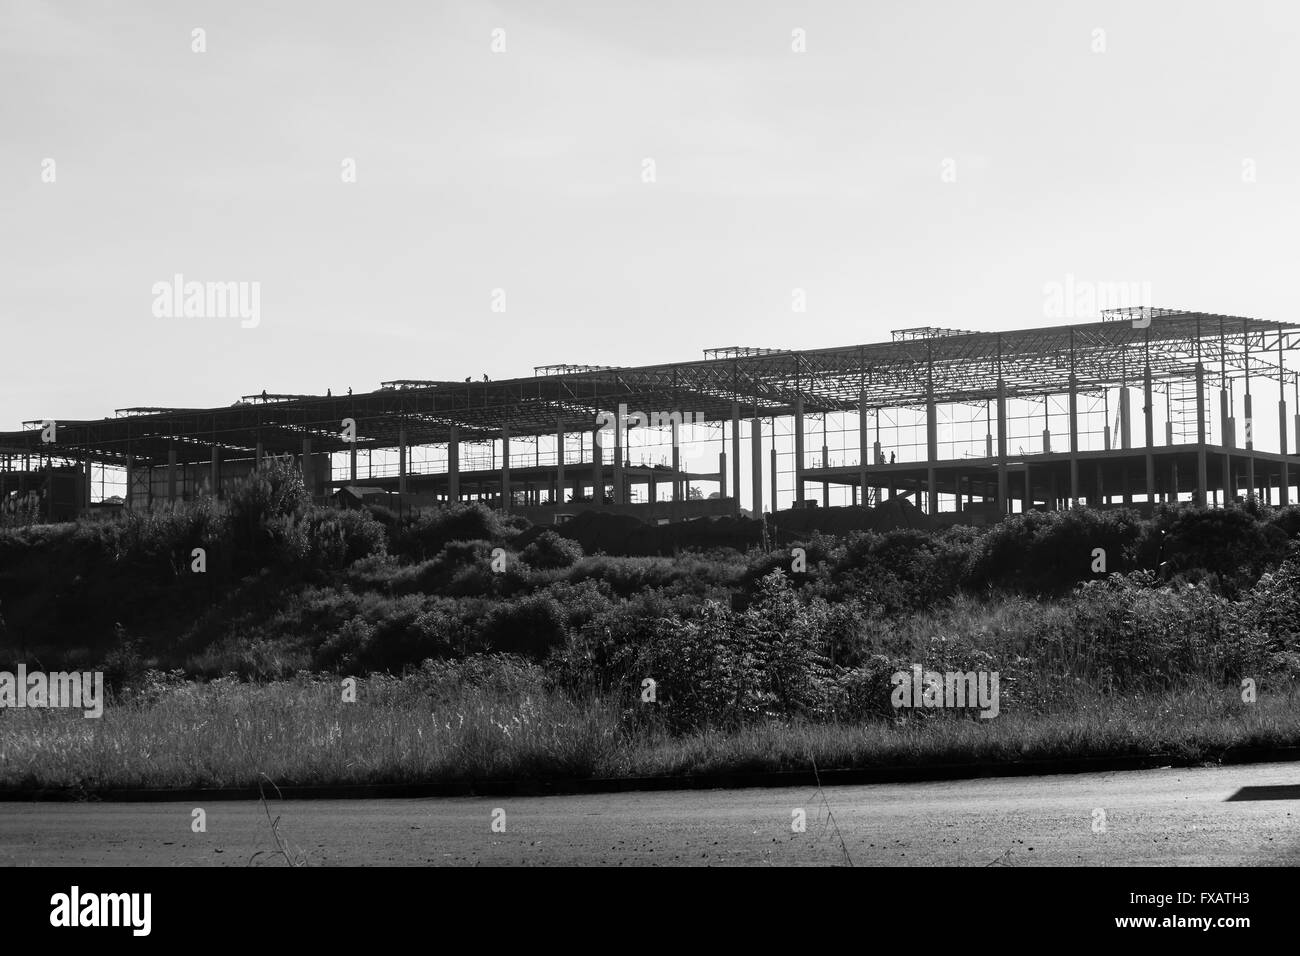 Hochbau Fabrik Lager Stahl Überdachung Strukturen auf halbem Weg zum Abschluss. Stockfoto